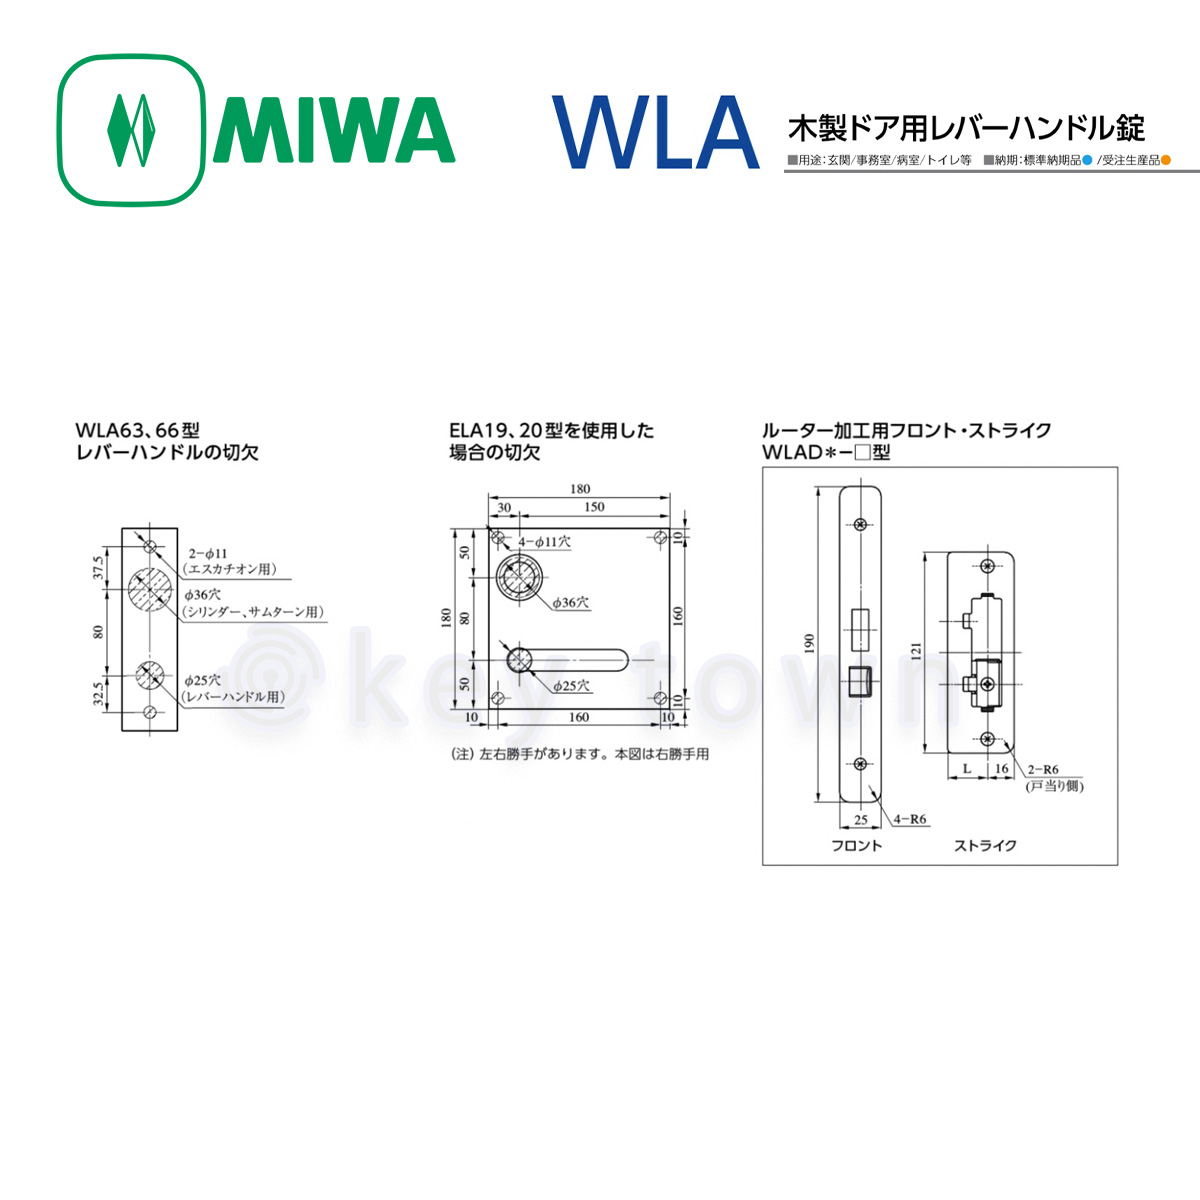 MIWA 【美和ロック】 木製ドア用レバーハンドル [MIWA-WLA] U9WLA52-1